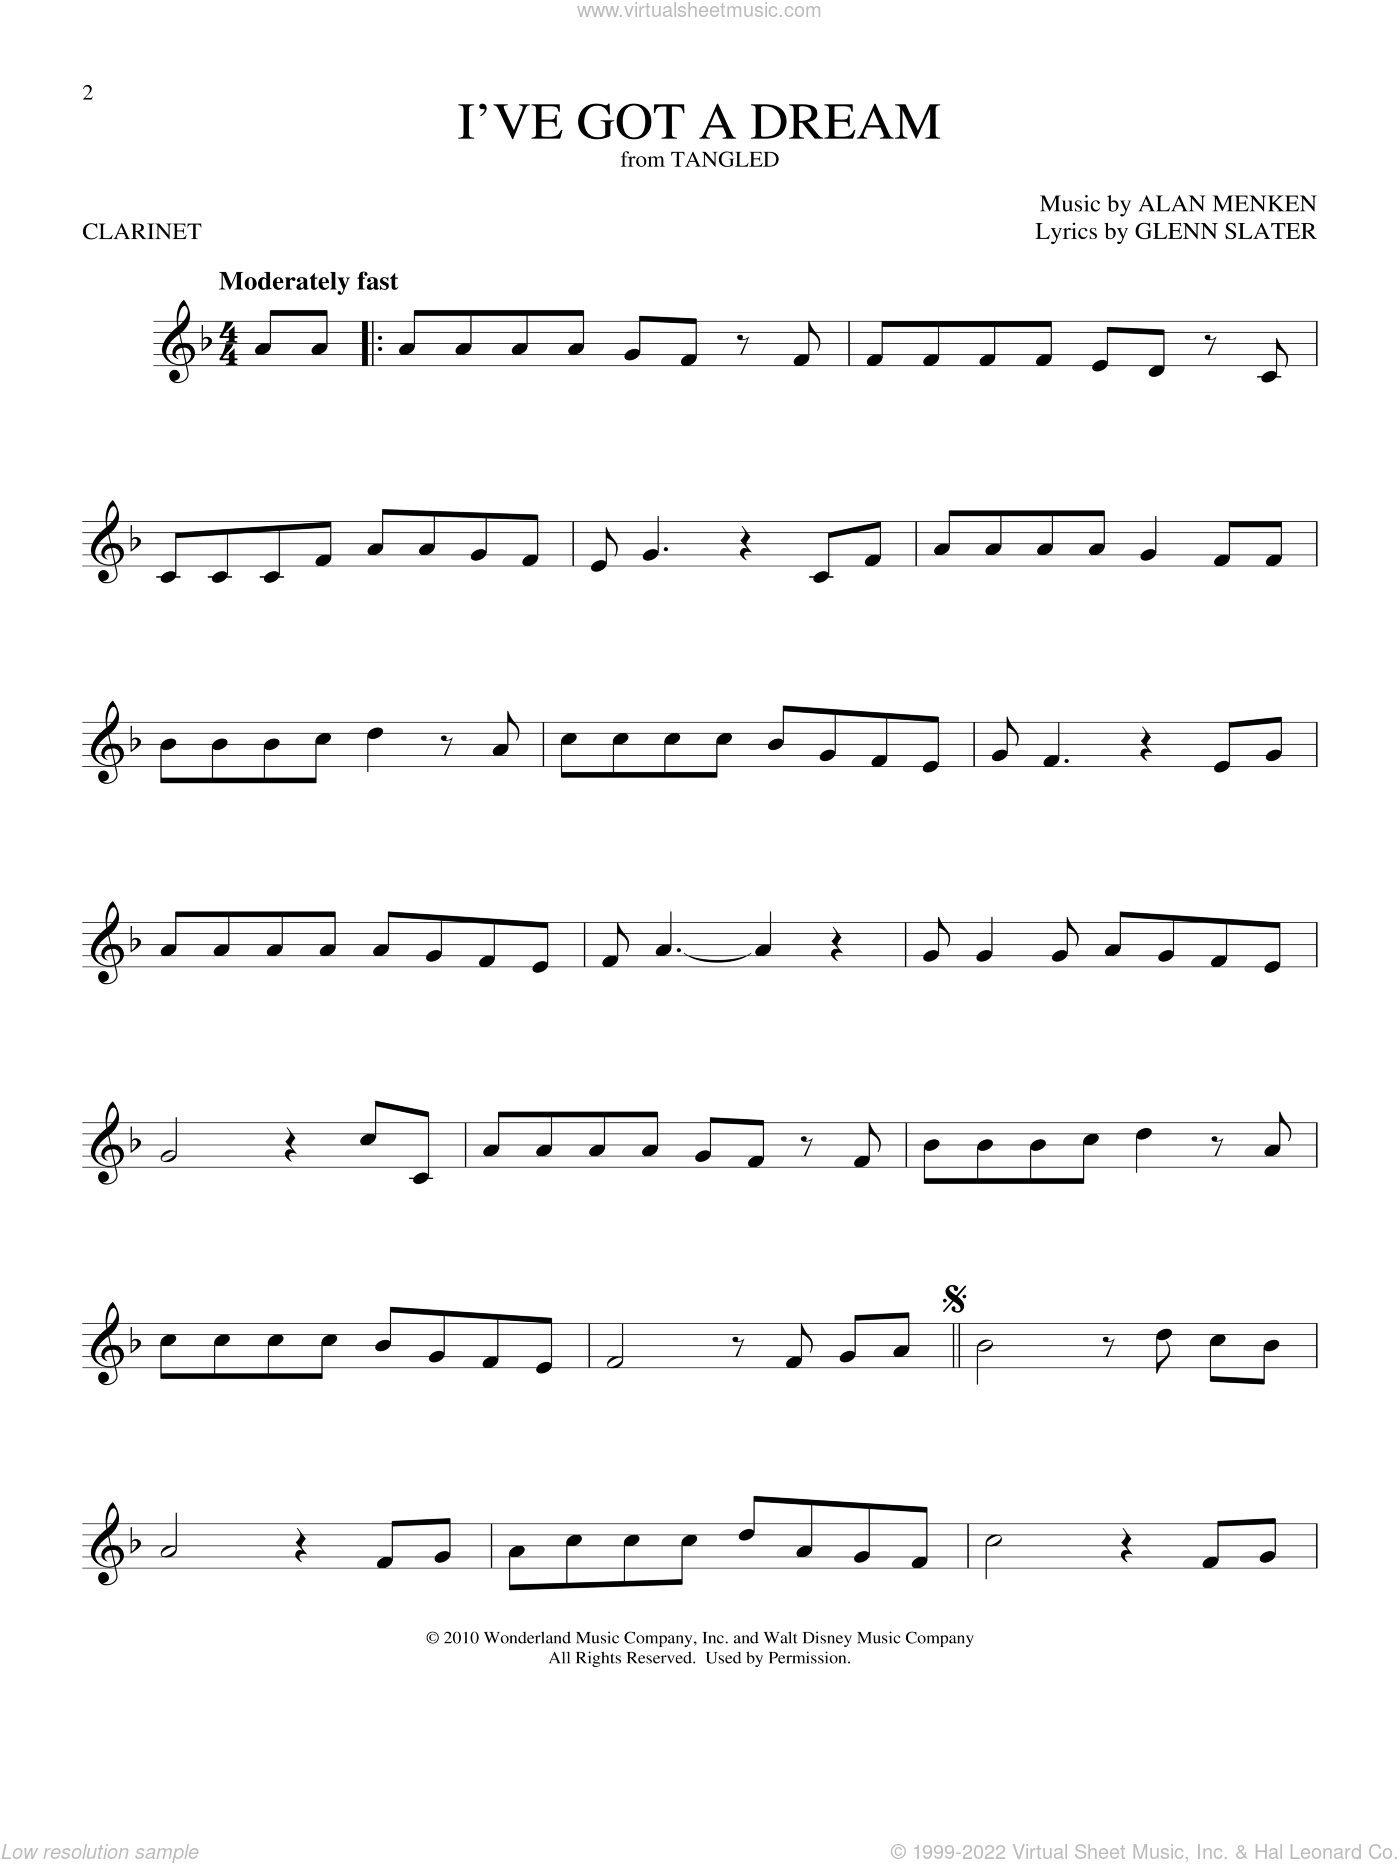 Menken - I've Got A Dream (from Disney's Tangled) sheet music for